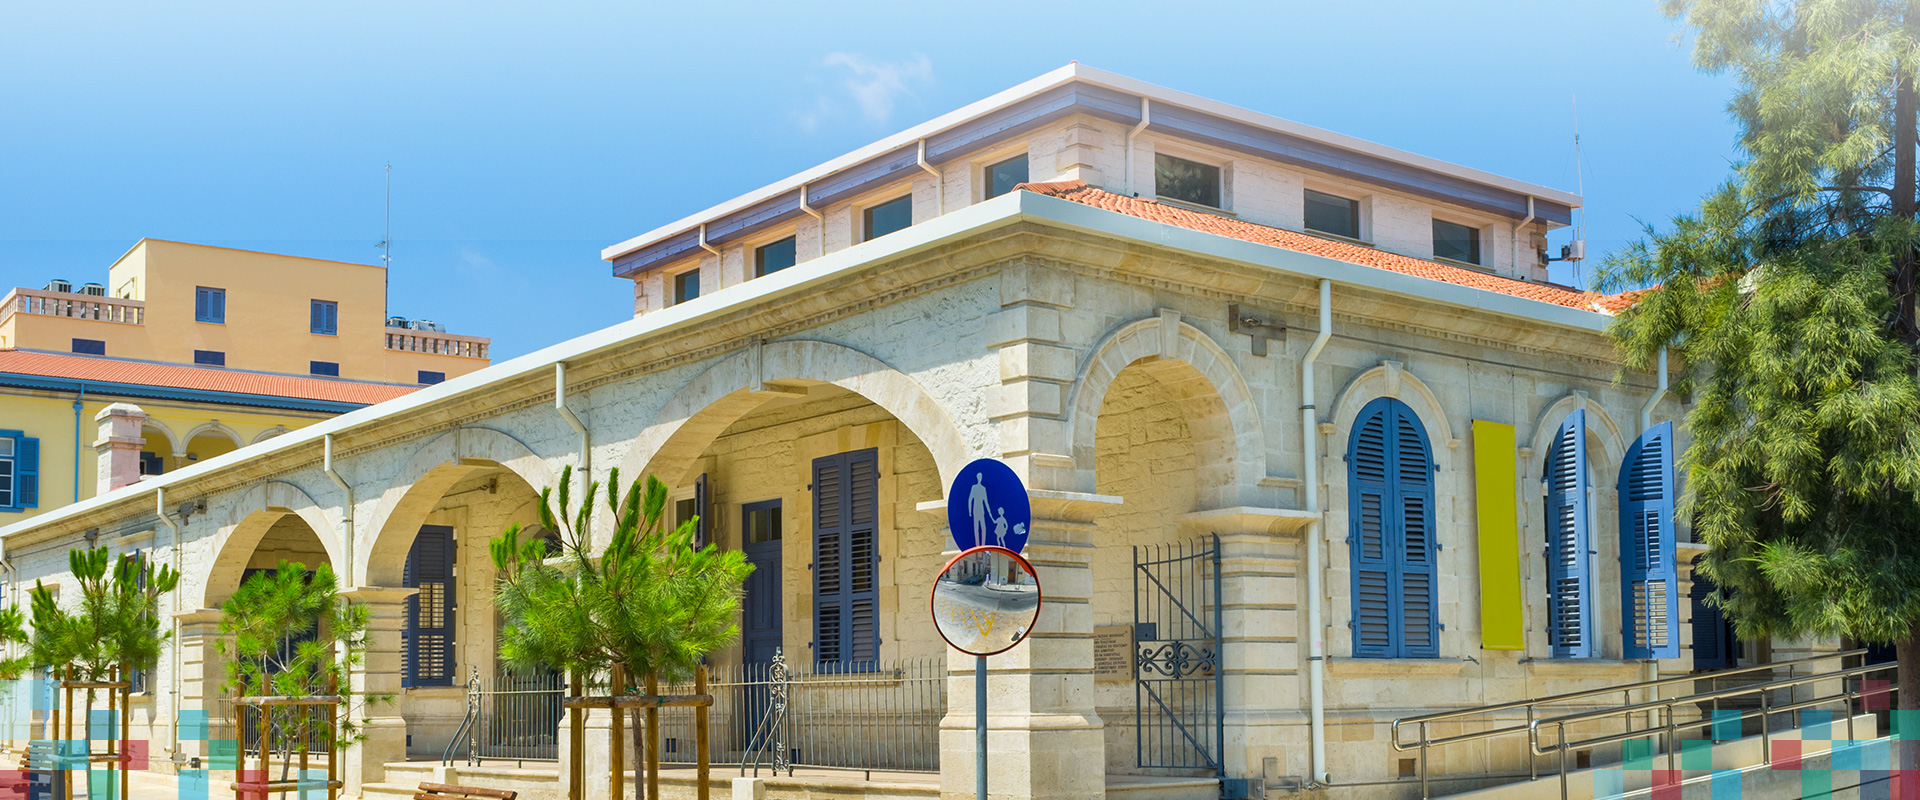  Βιβλιοθήκη του Τεχνολογικού Πανεπιστημίου Κύπρου